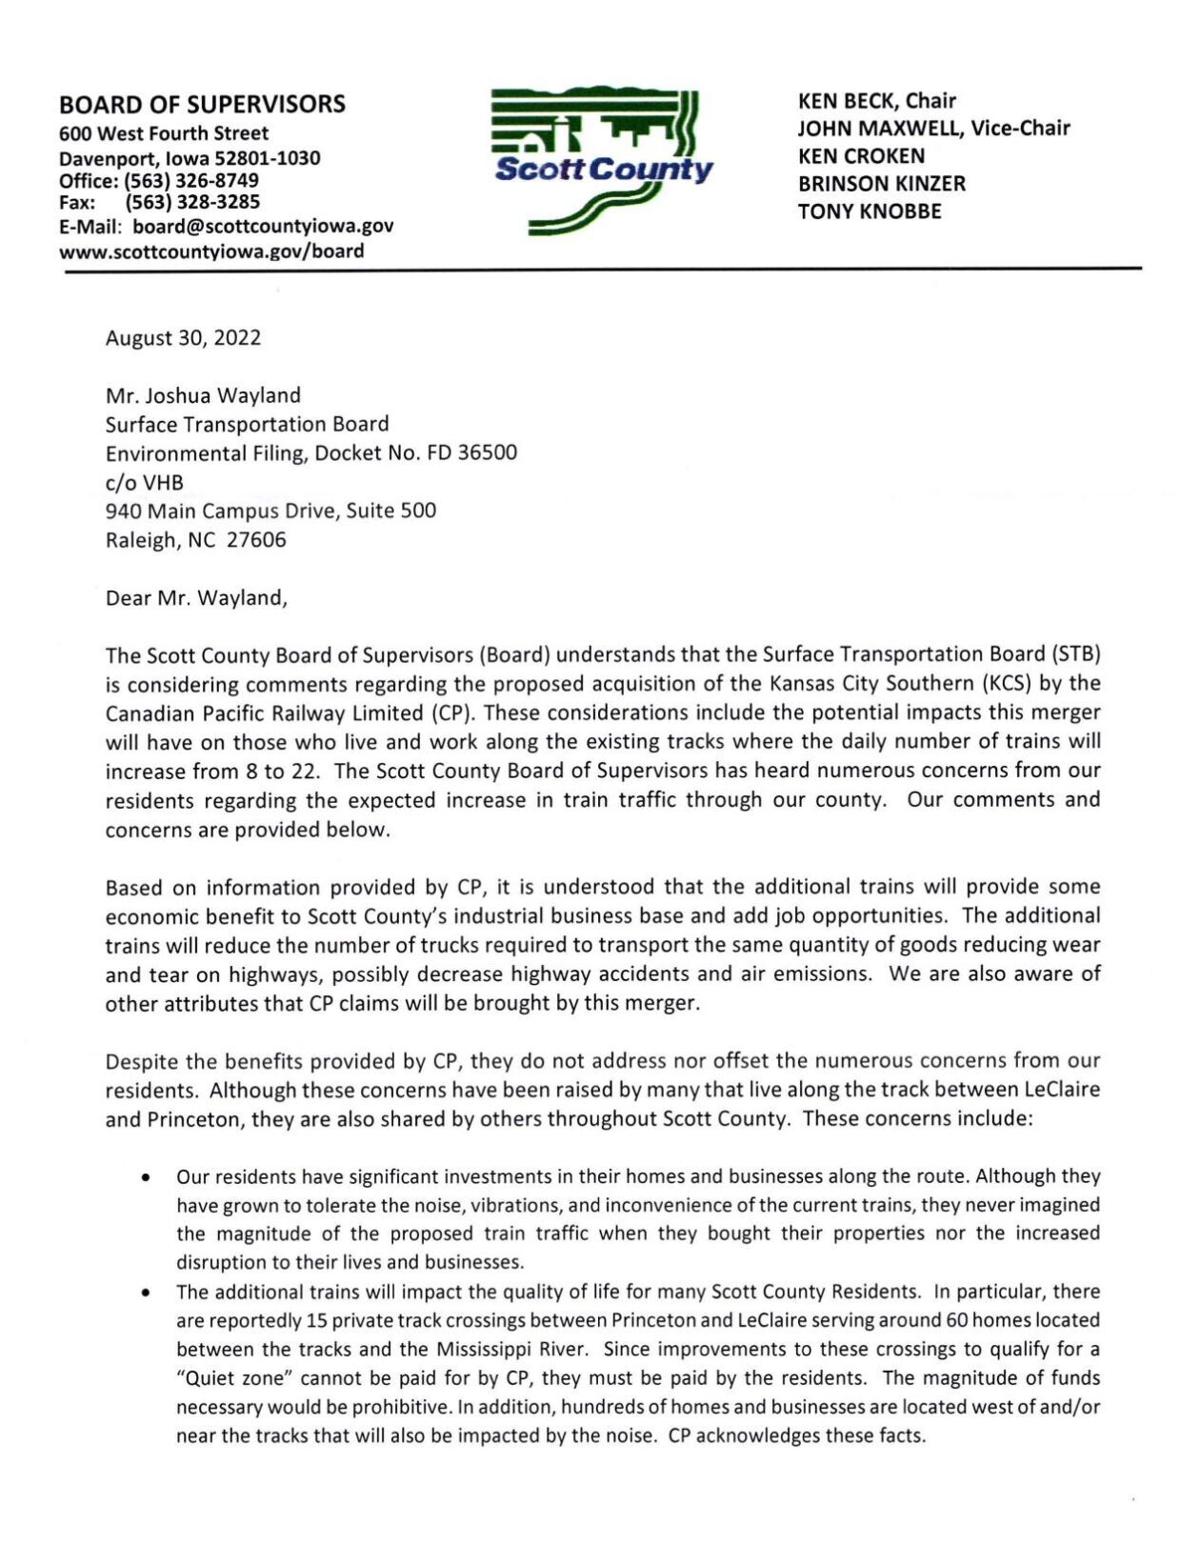 Scott County Board of Supervisors Letter Opposing Merger